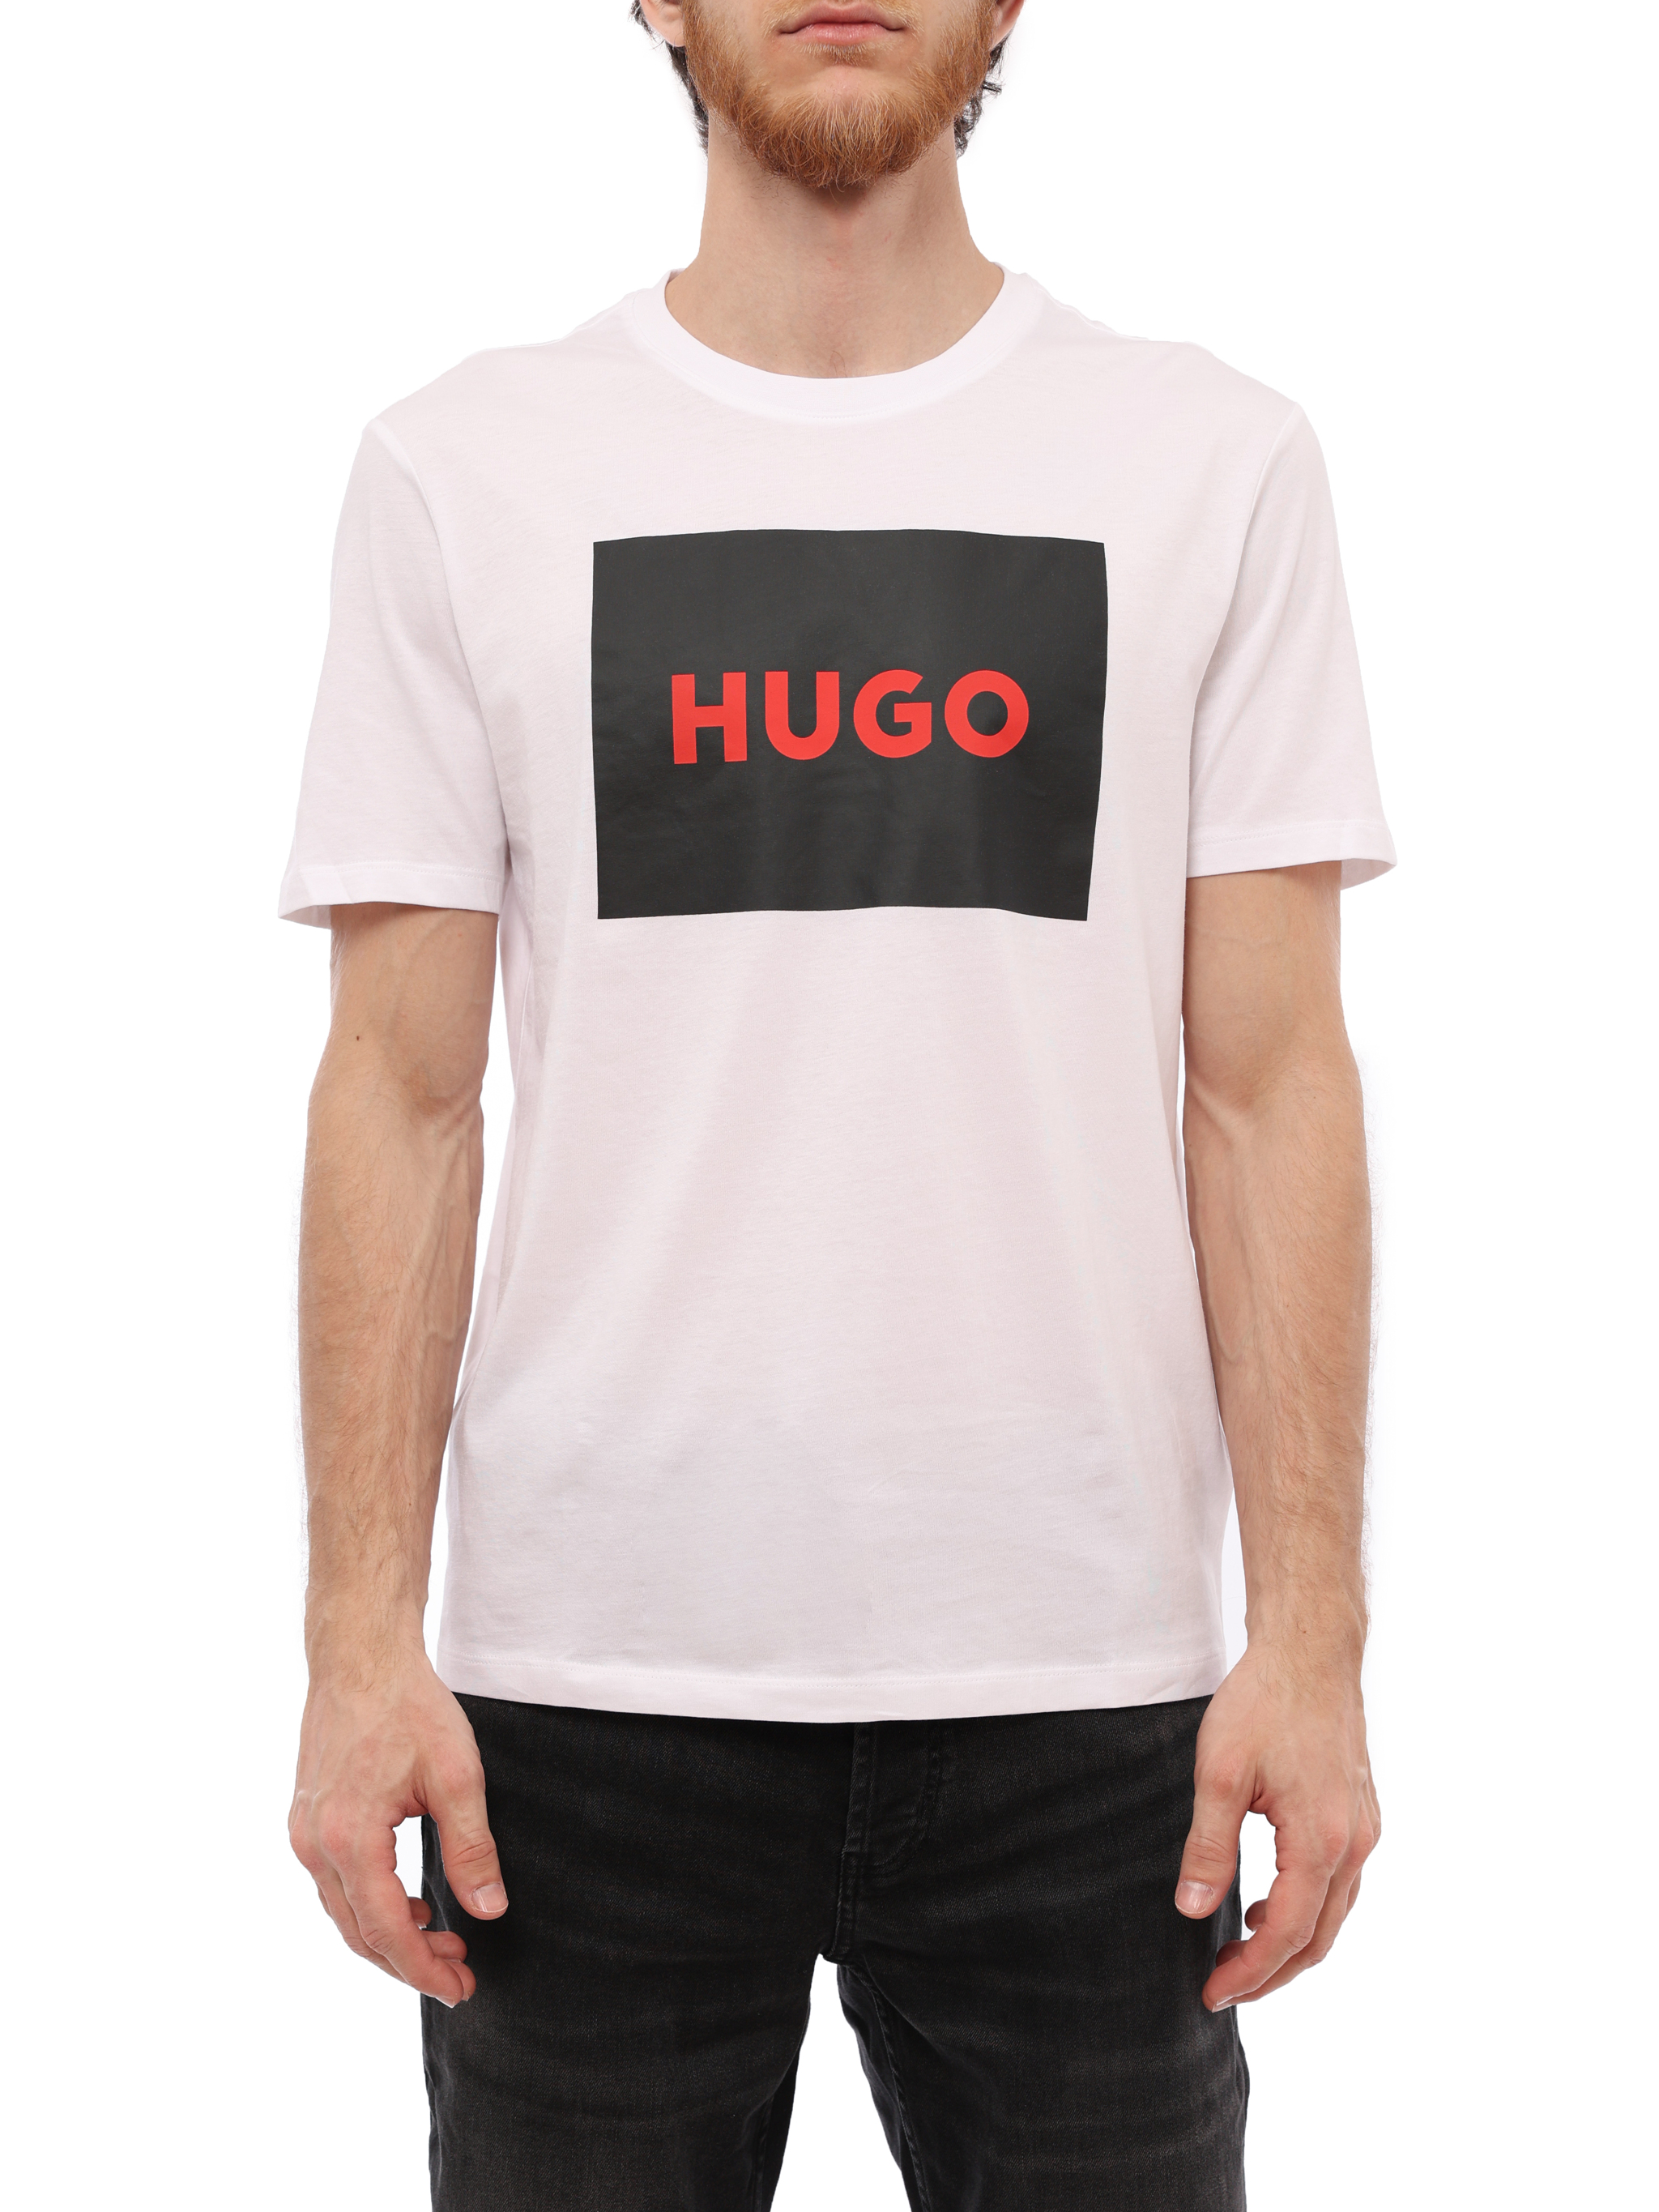 Купить футболку hugo. Футболка Hugo. Футболка Хуго. Хуго футболка мужская. Ярылк Хуго на футболке.